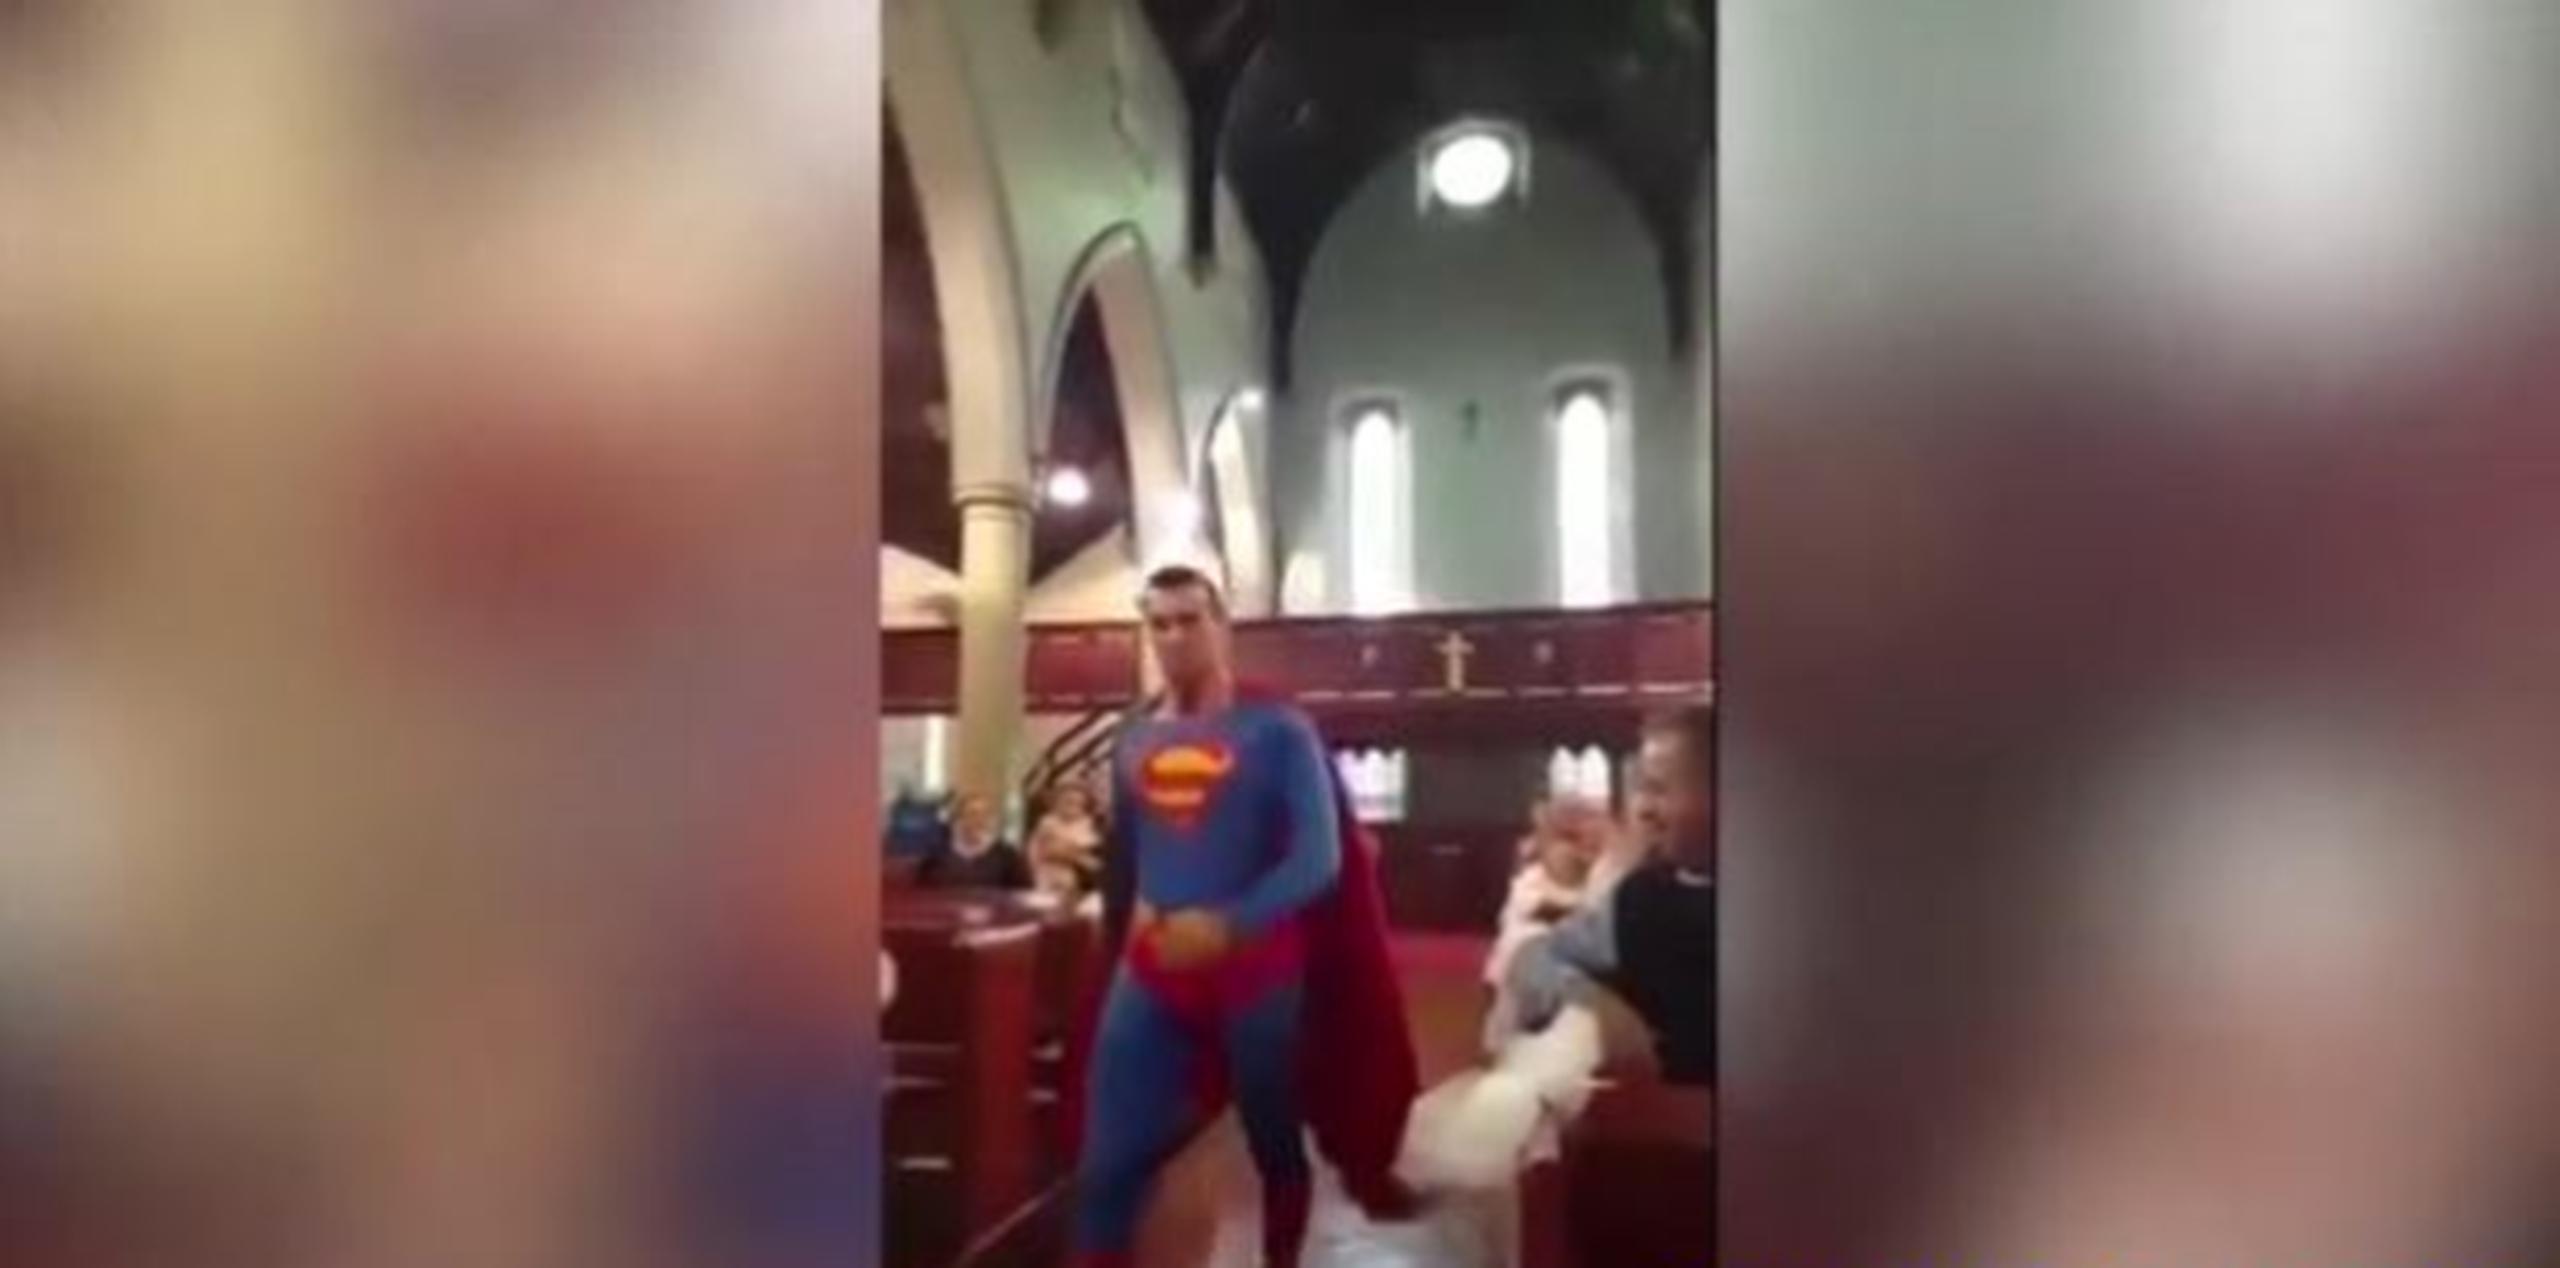 El vídeo capturado el sábado en un boda en Dukinfield. (Captura)